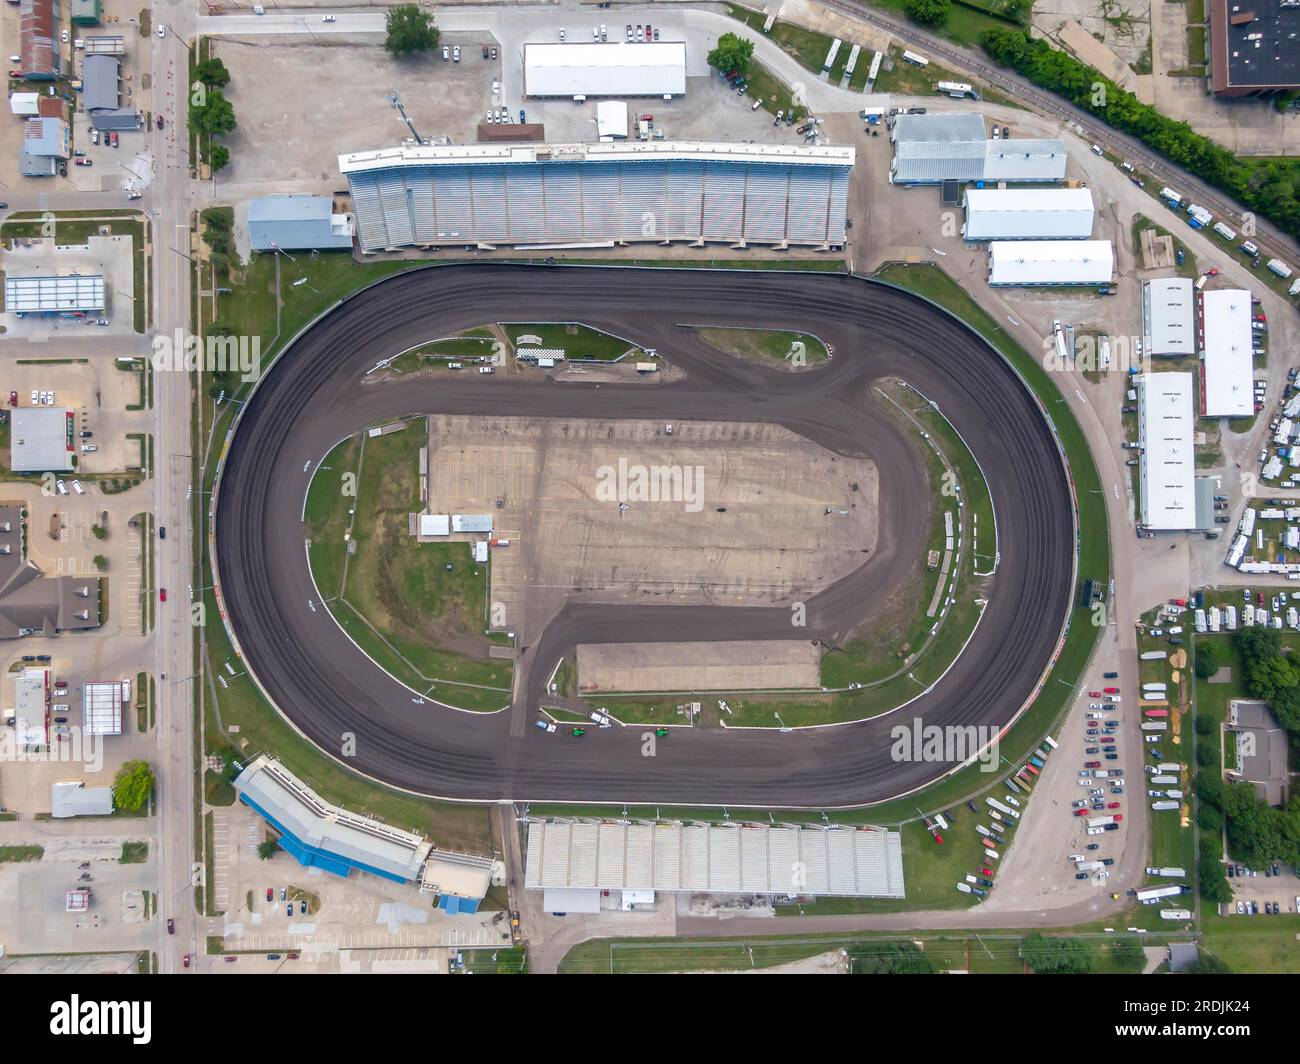 19 luglio 2020, Knoxville, Iowa, Stati Uniti: Il Knoxville Raceway è un circuito ovale semi-banked di 2 km di terra (zook Clay) situato nella contea di Marion Foto Stock